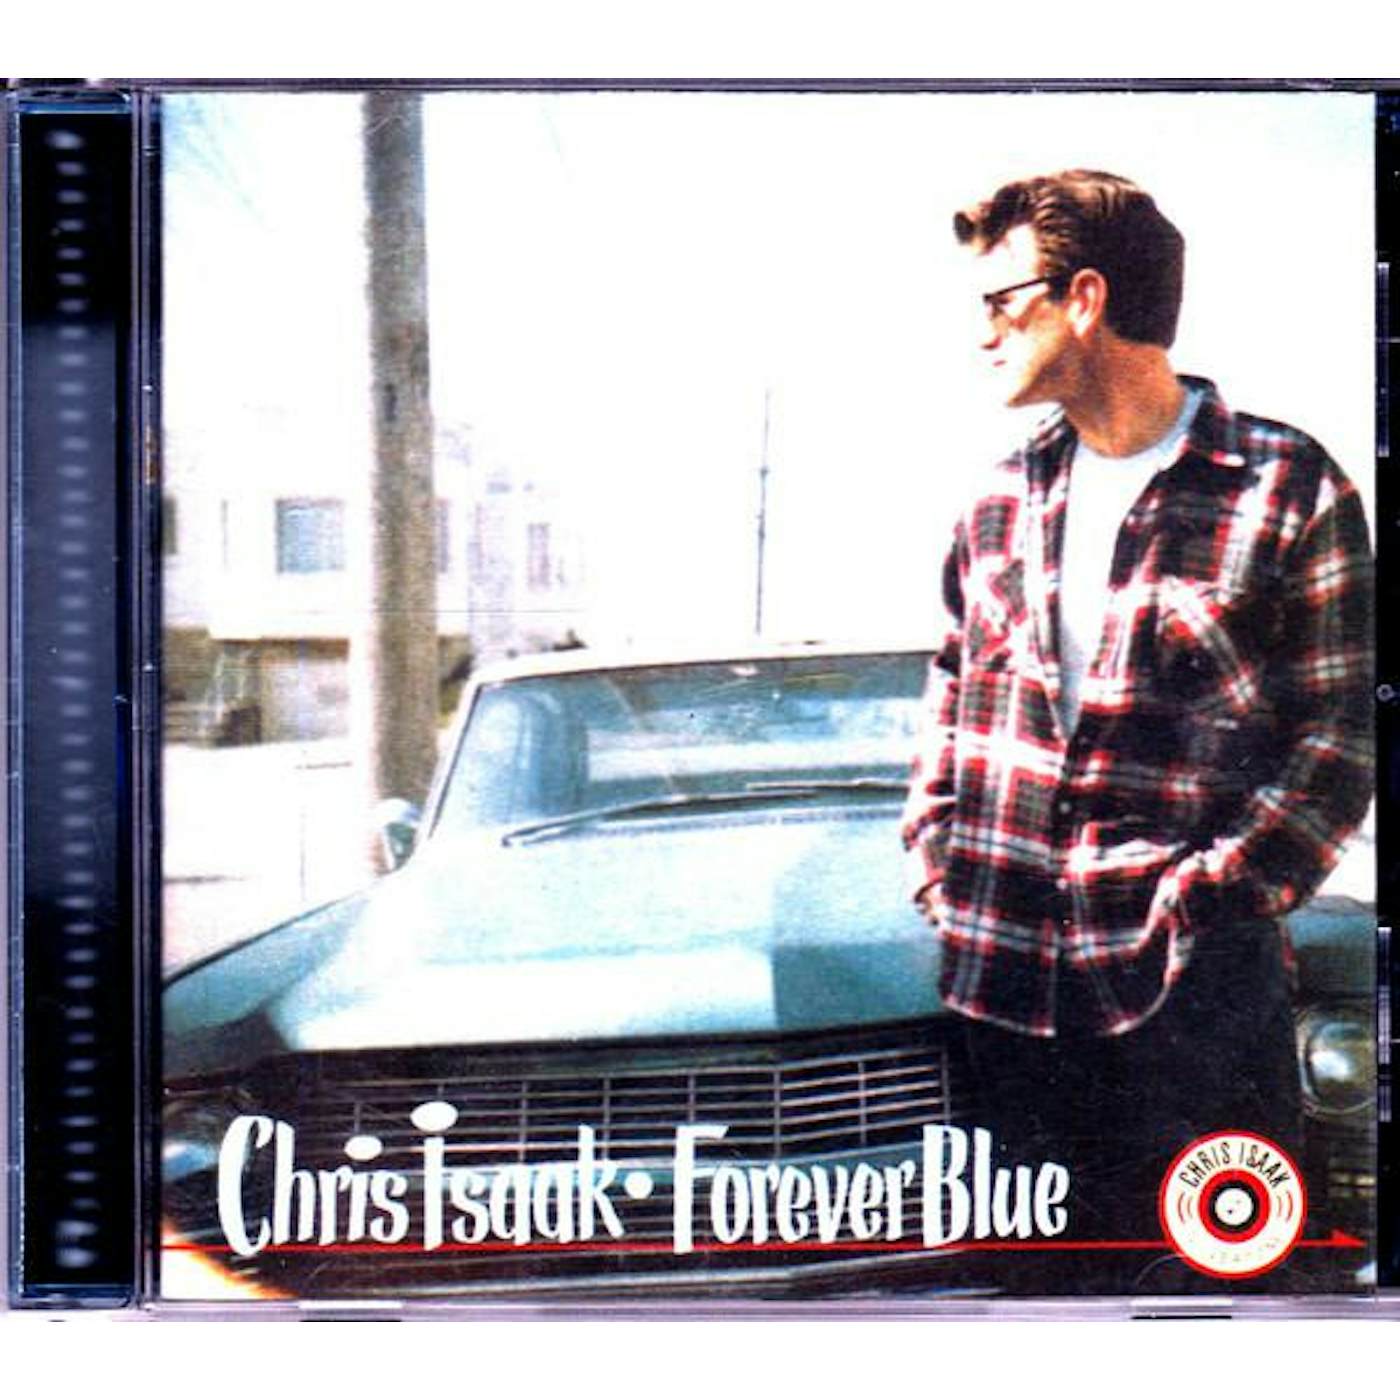 Chris Isaak FOREVER BLUE CD